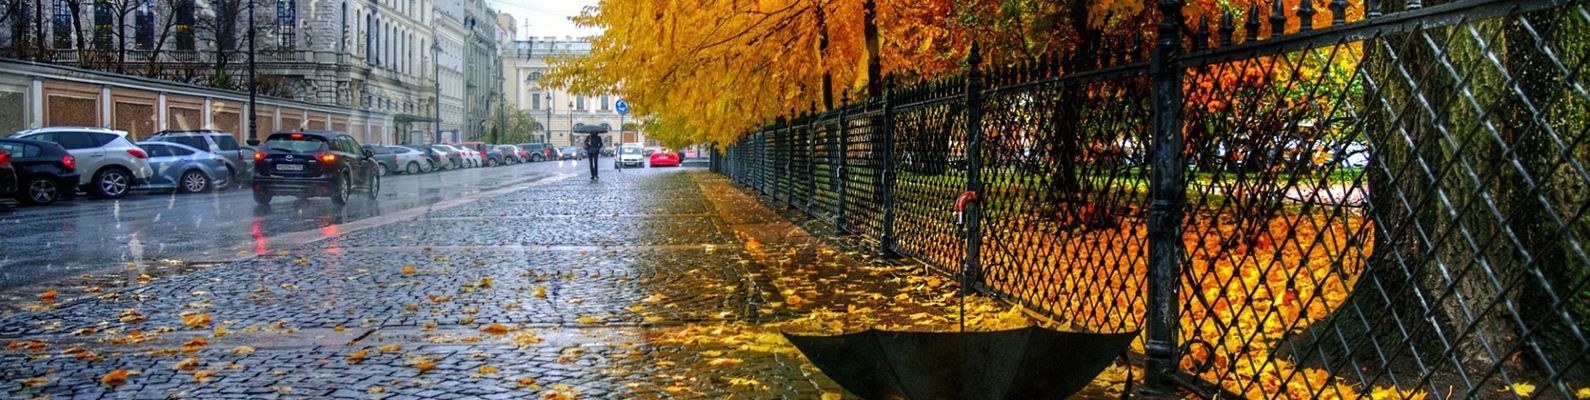 Екатерининский парк, дождь, осень, зонт, Санкт Петербург, листья, забор